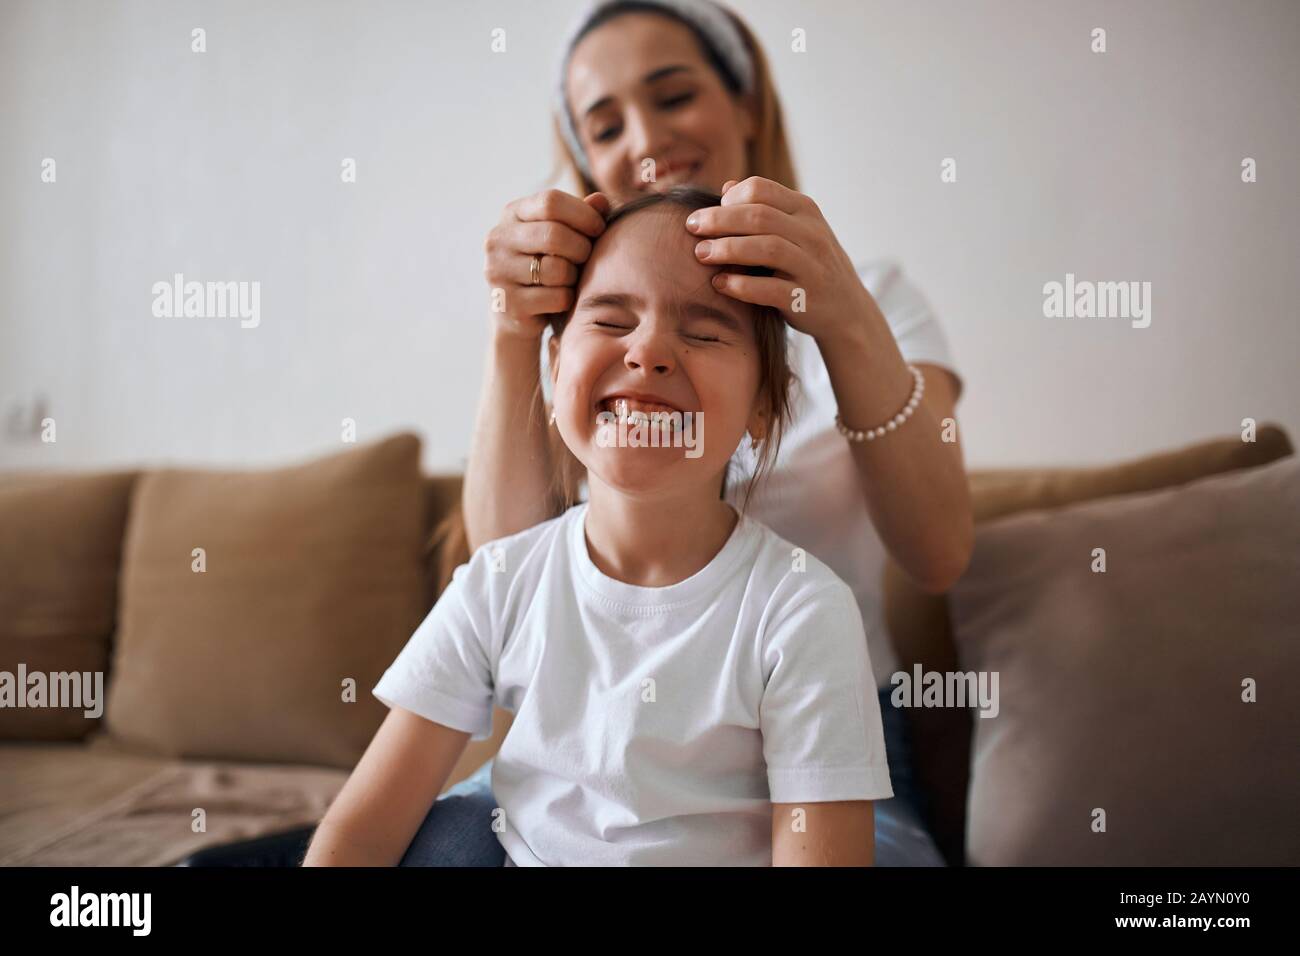 madre plaitando una trenza para su hijo, mujer haciendo el hgair del niño, mujer apretando el pelo del niño después de la noche. foto de cerca, chica divertida haciendo caras Foto de stock